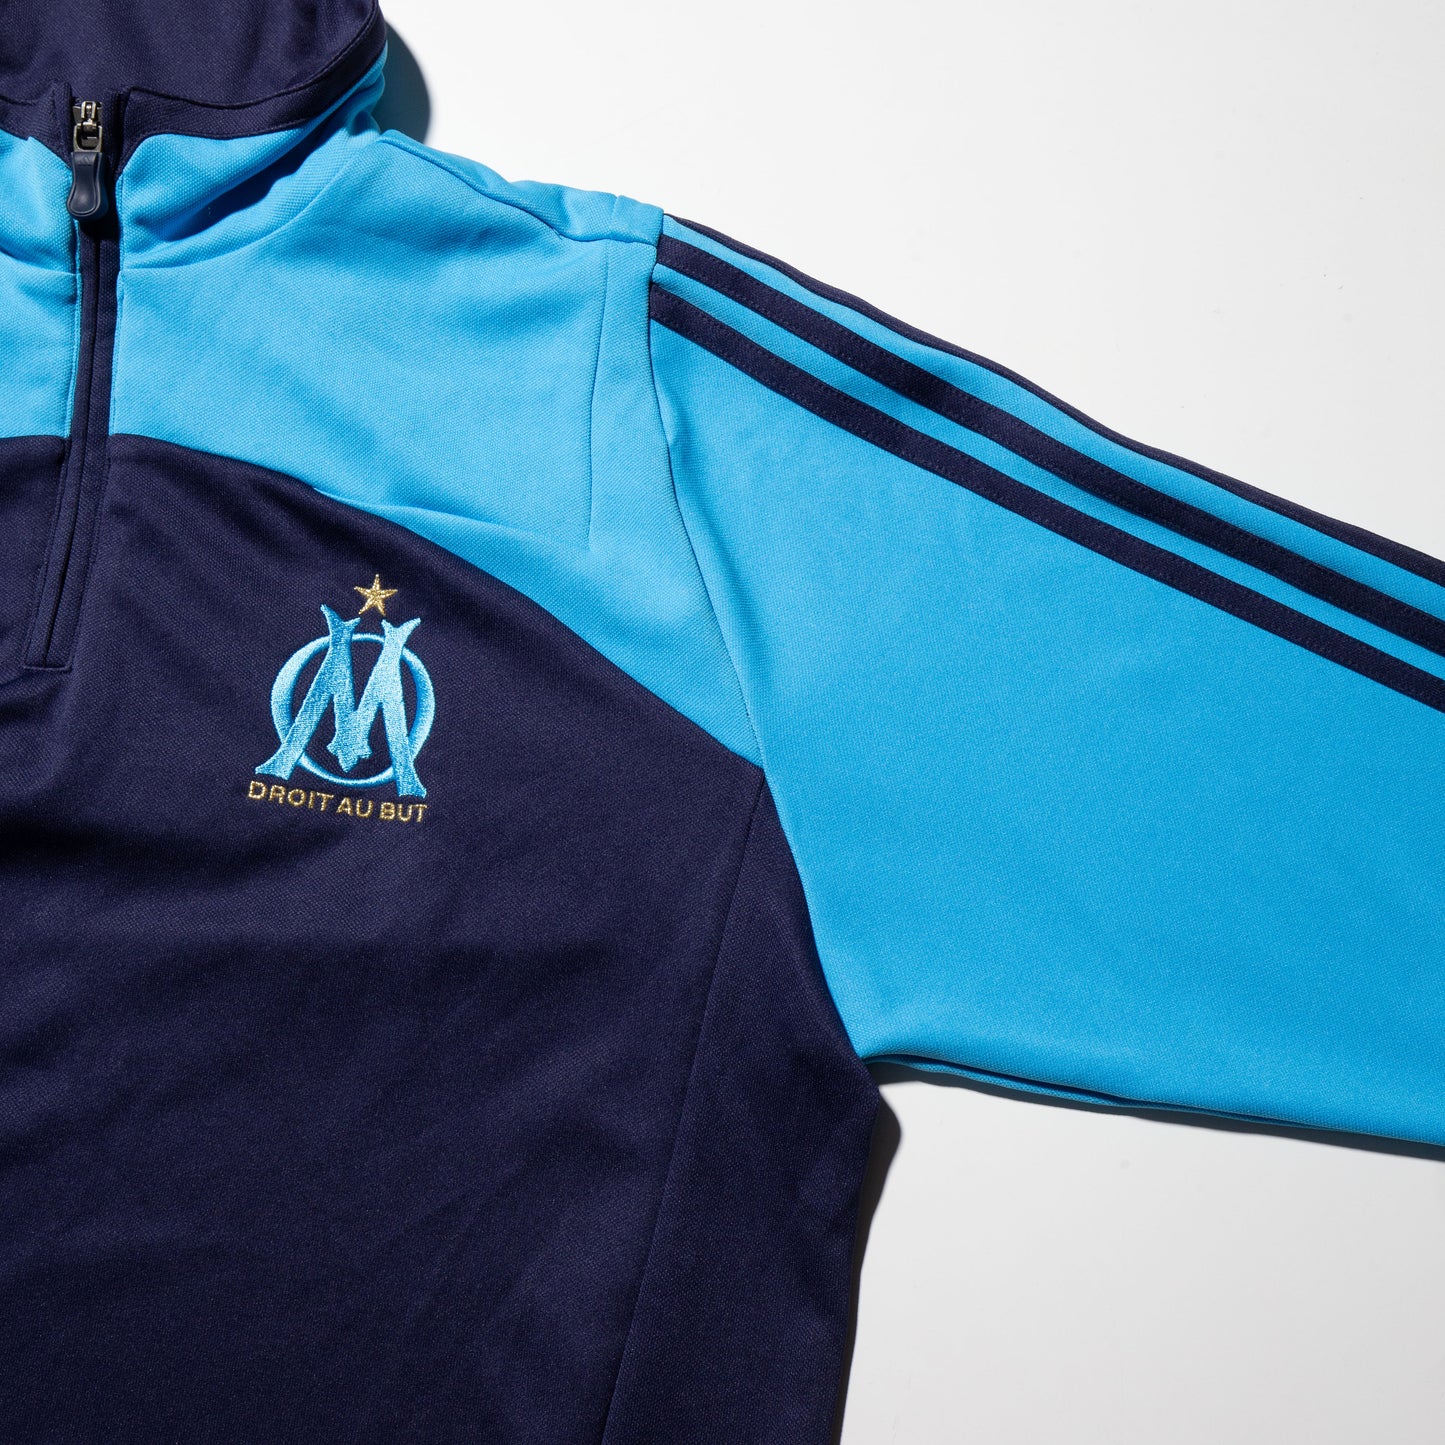 vintage 07/10 Olympique de Marseille adidas track jacket